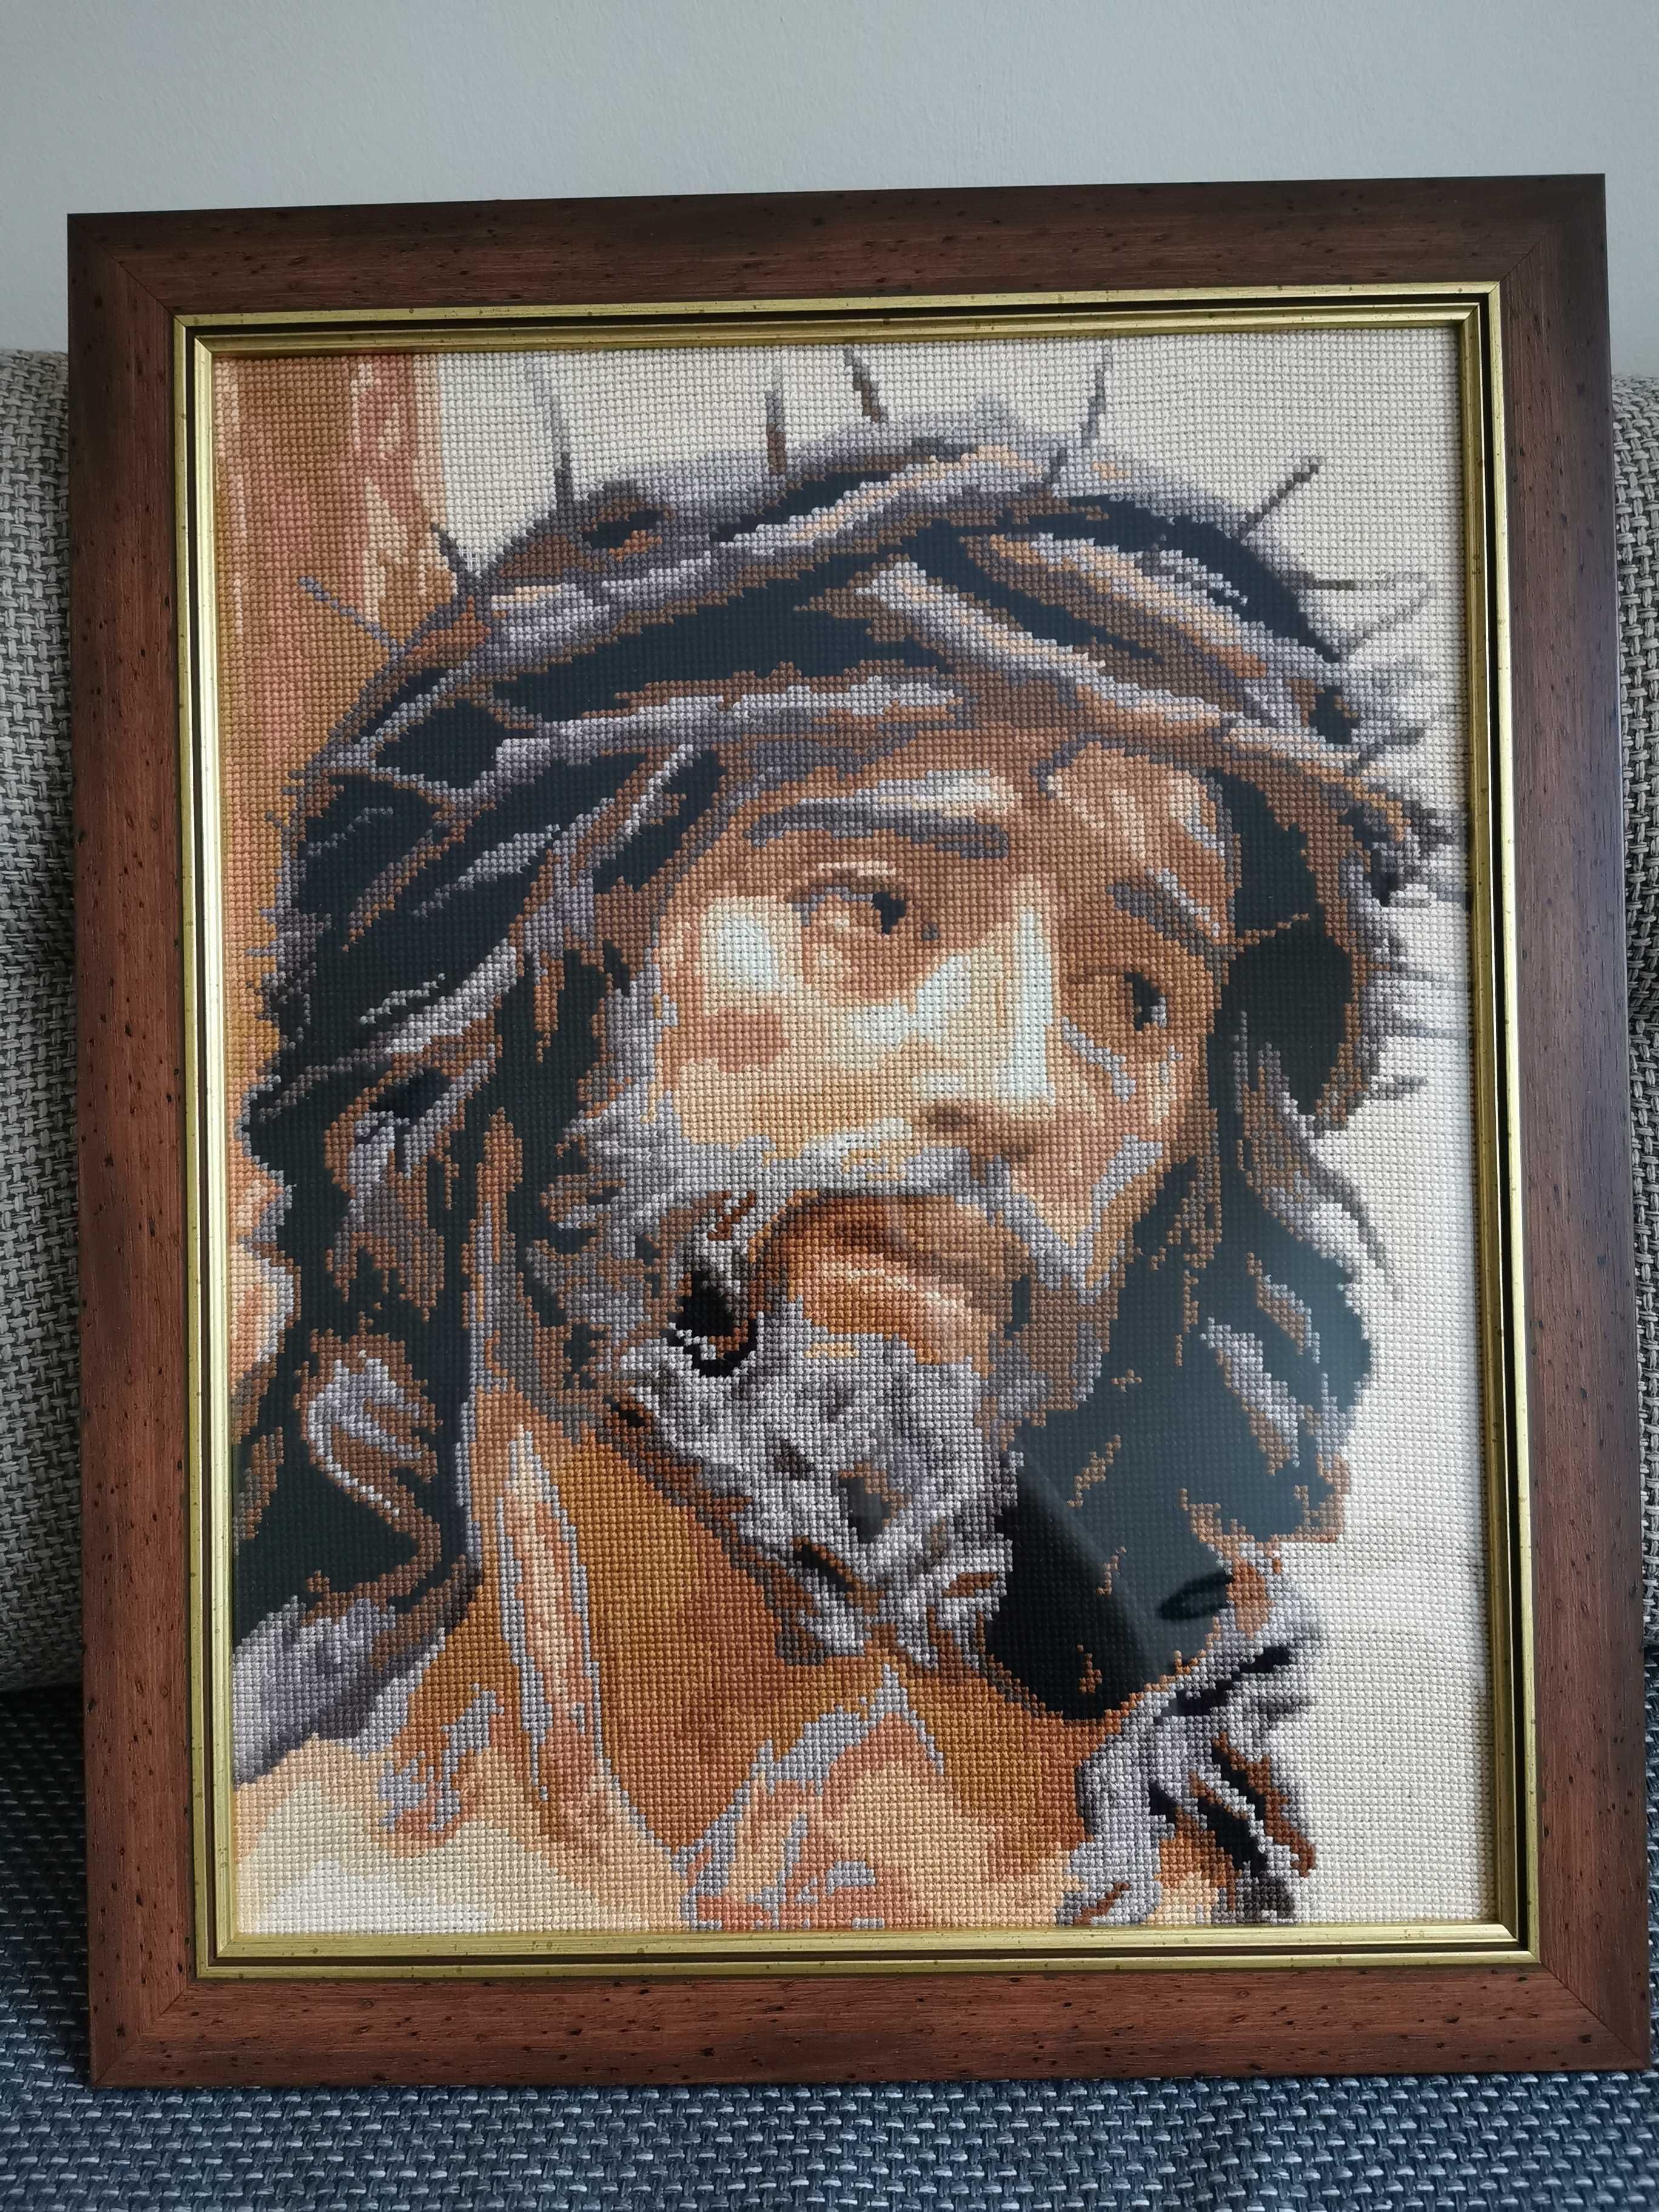 Obraz haftowany na kanwie: "Jezus w koronie cierniowej"